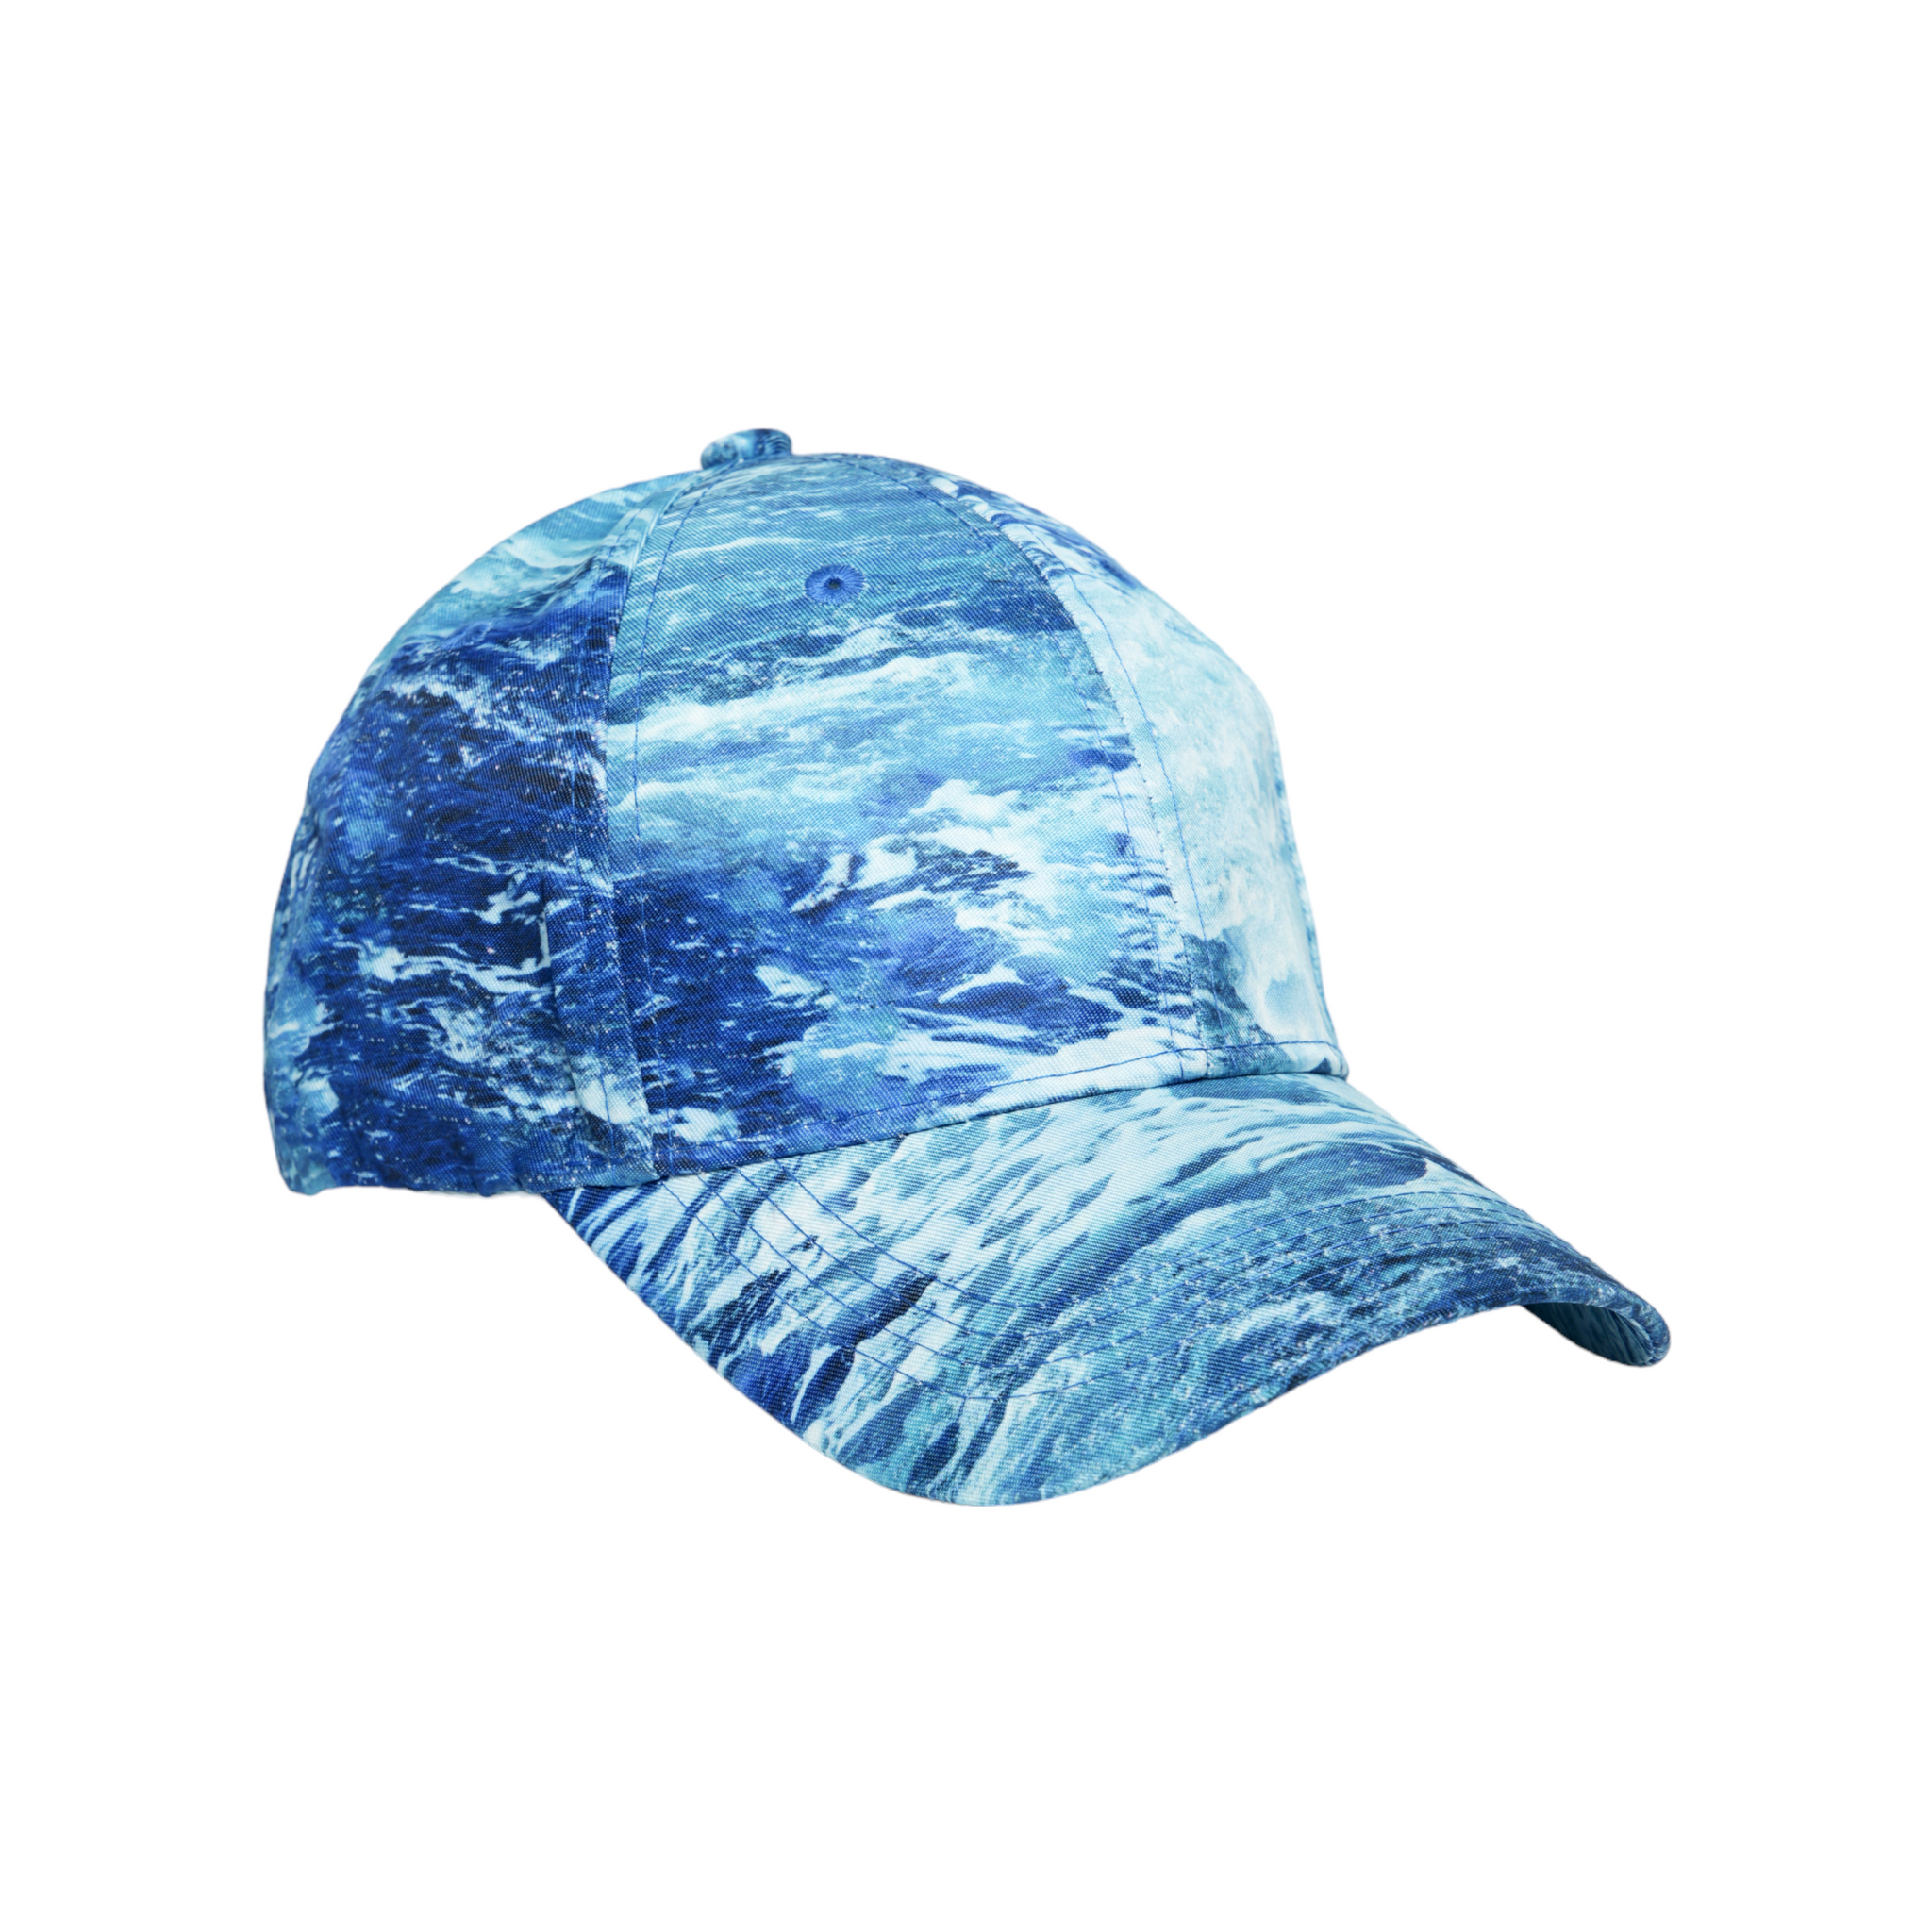 Chokore Tie-Dye Baseball Cap (Blue)